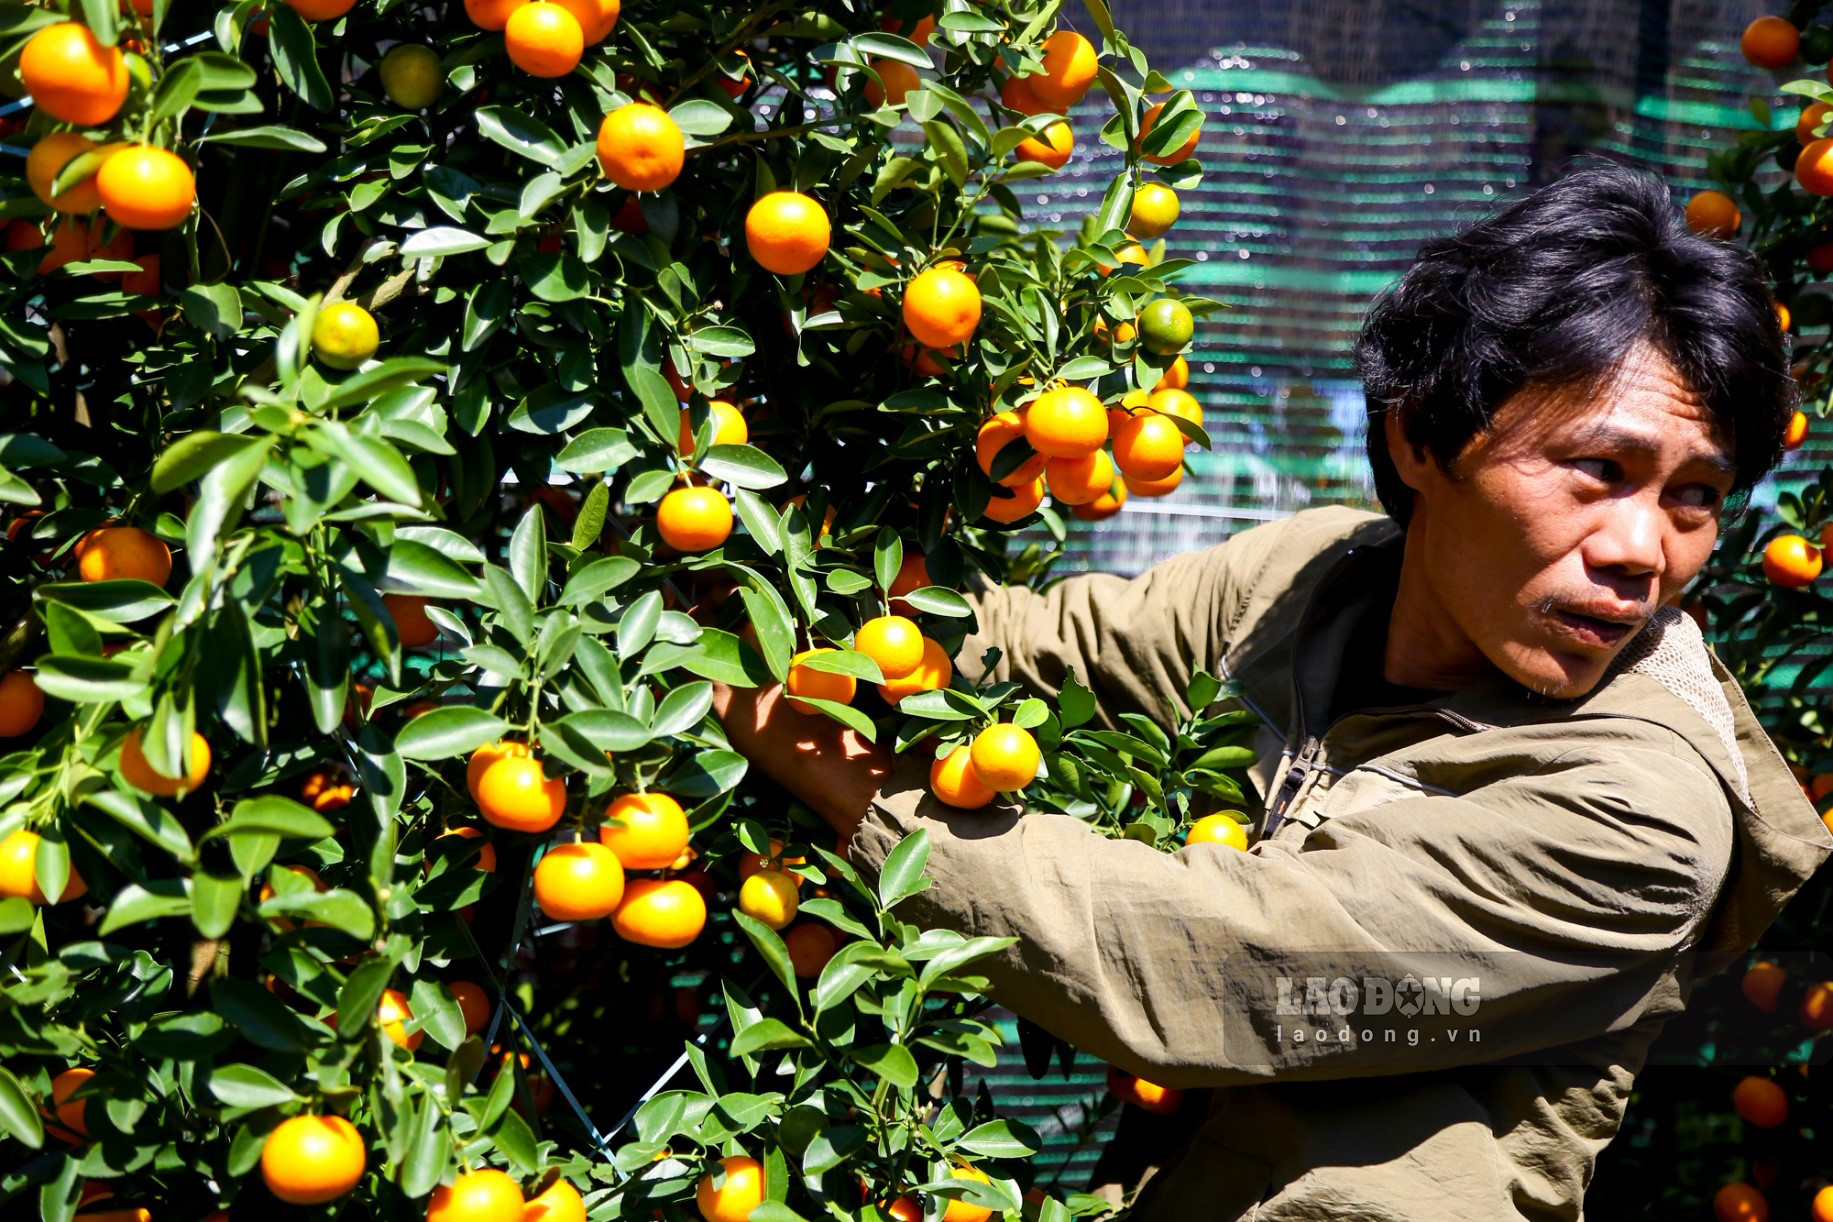 Là một nhà vườn trồng quất với số lượng lớn tại xã Cẩm Hà, TP Hội An (Quảng Nam), ông Bùi Quang Trung cho biết năm nay quất nhà ông được bày bán tại quảng trường có giá từ 1 triệu đồng cho đến hơn 10 triệu đồng tùy cây, cao hơn so với năm ngoái.